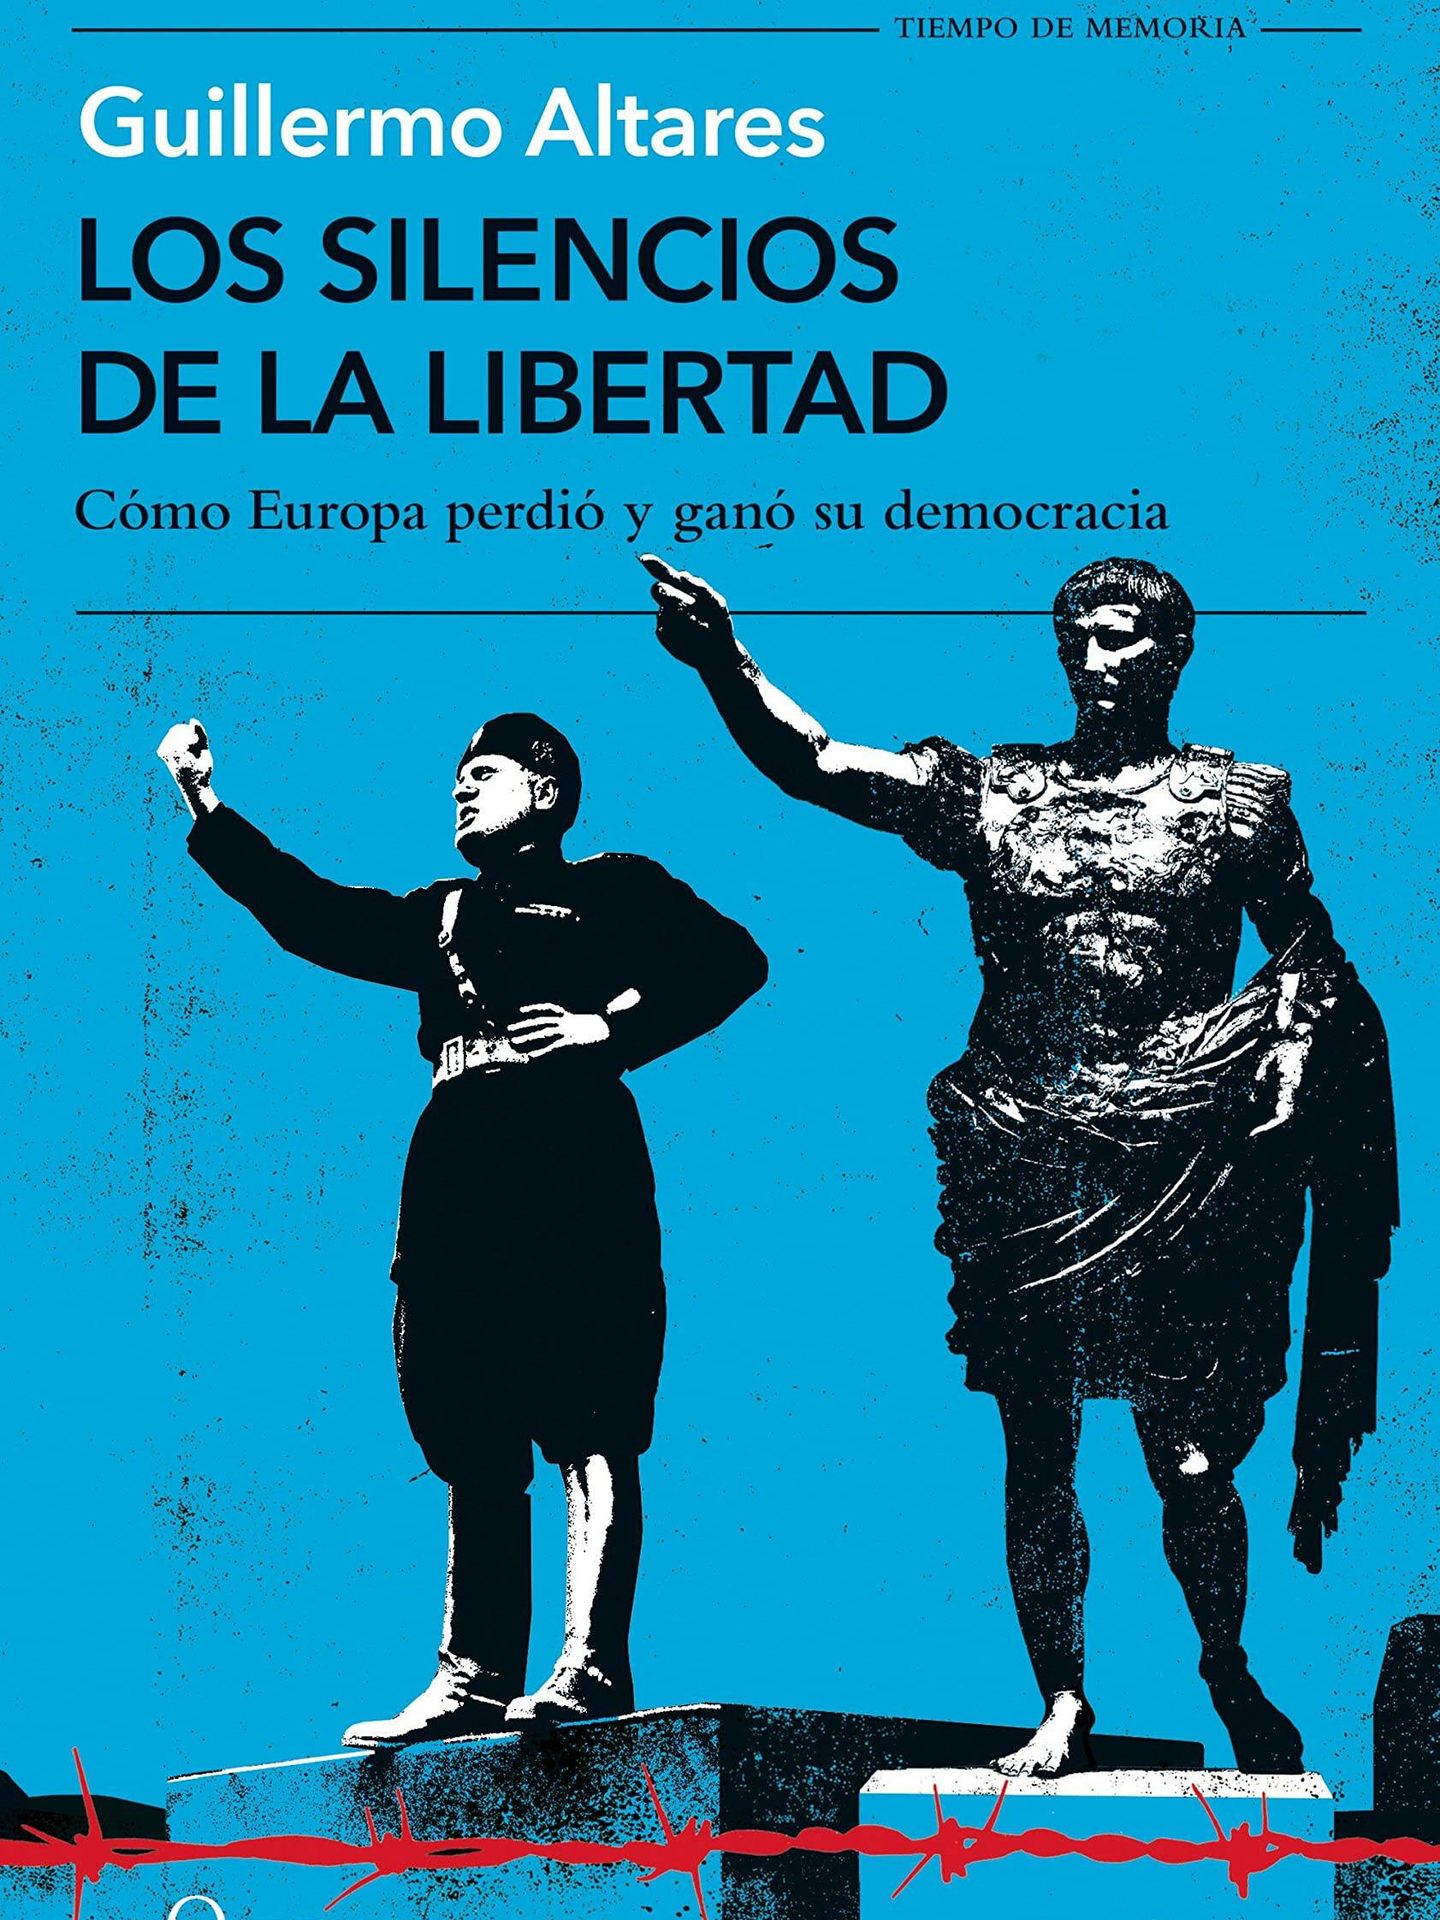 Portada de 'Los silencios de la libertad', el nuevo libro de Guillermo Altares.